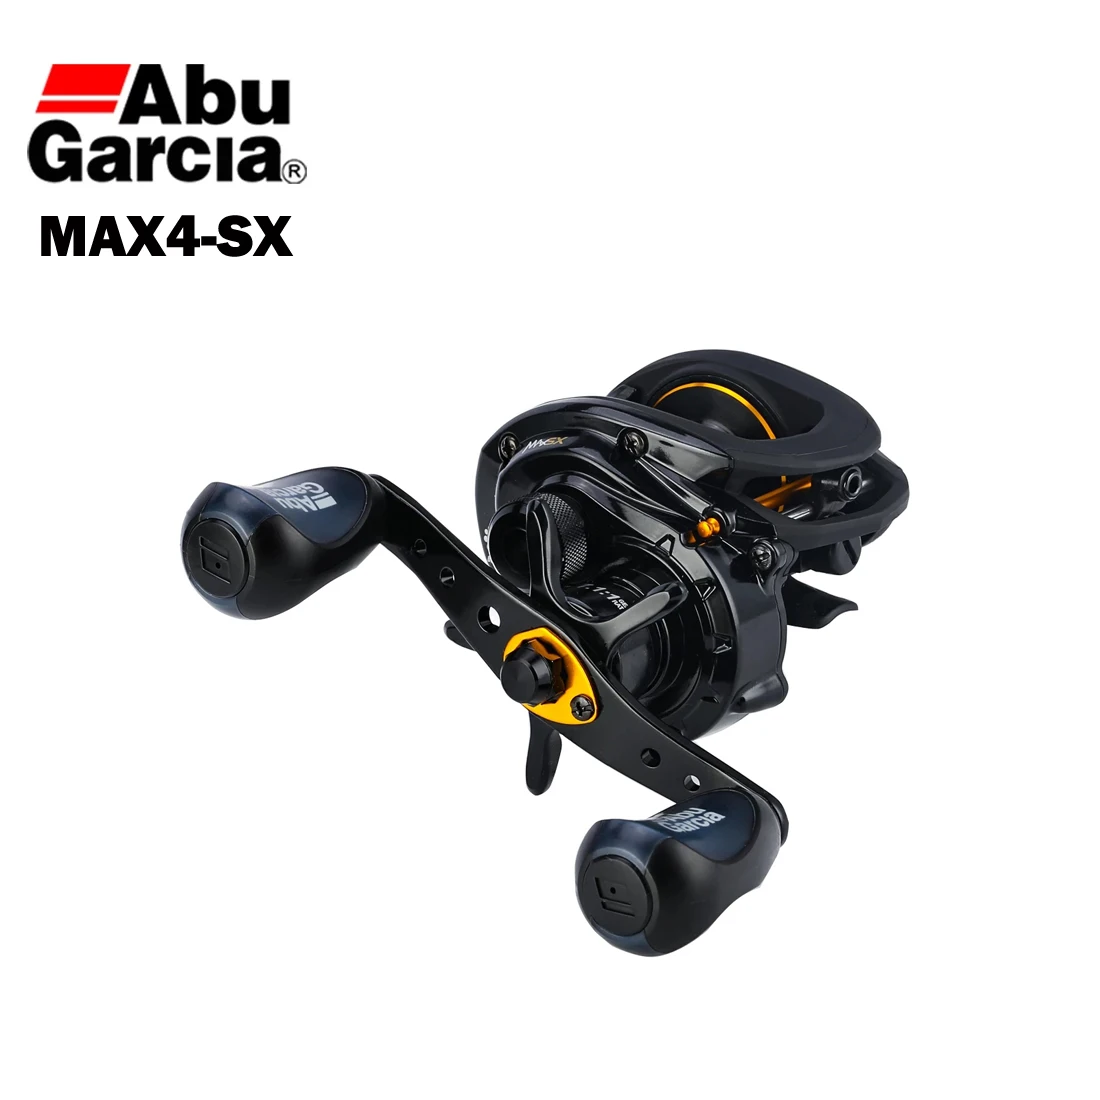 

Abu Garcia MAX4 SX Baitcasting Reel 7+1BB 7.1:1 Max Drag 6.8kg Corrosion Resistant Waterproof Long Casting Fishing Reel